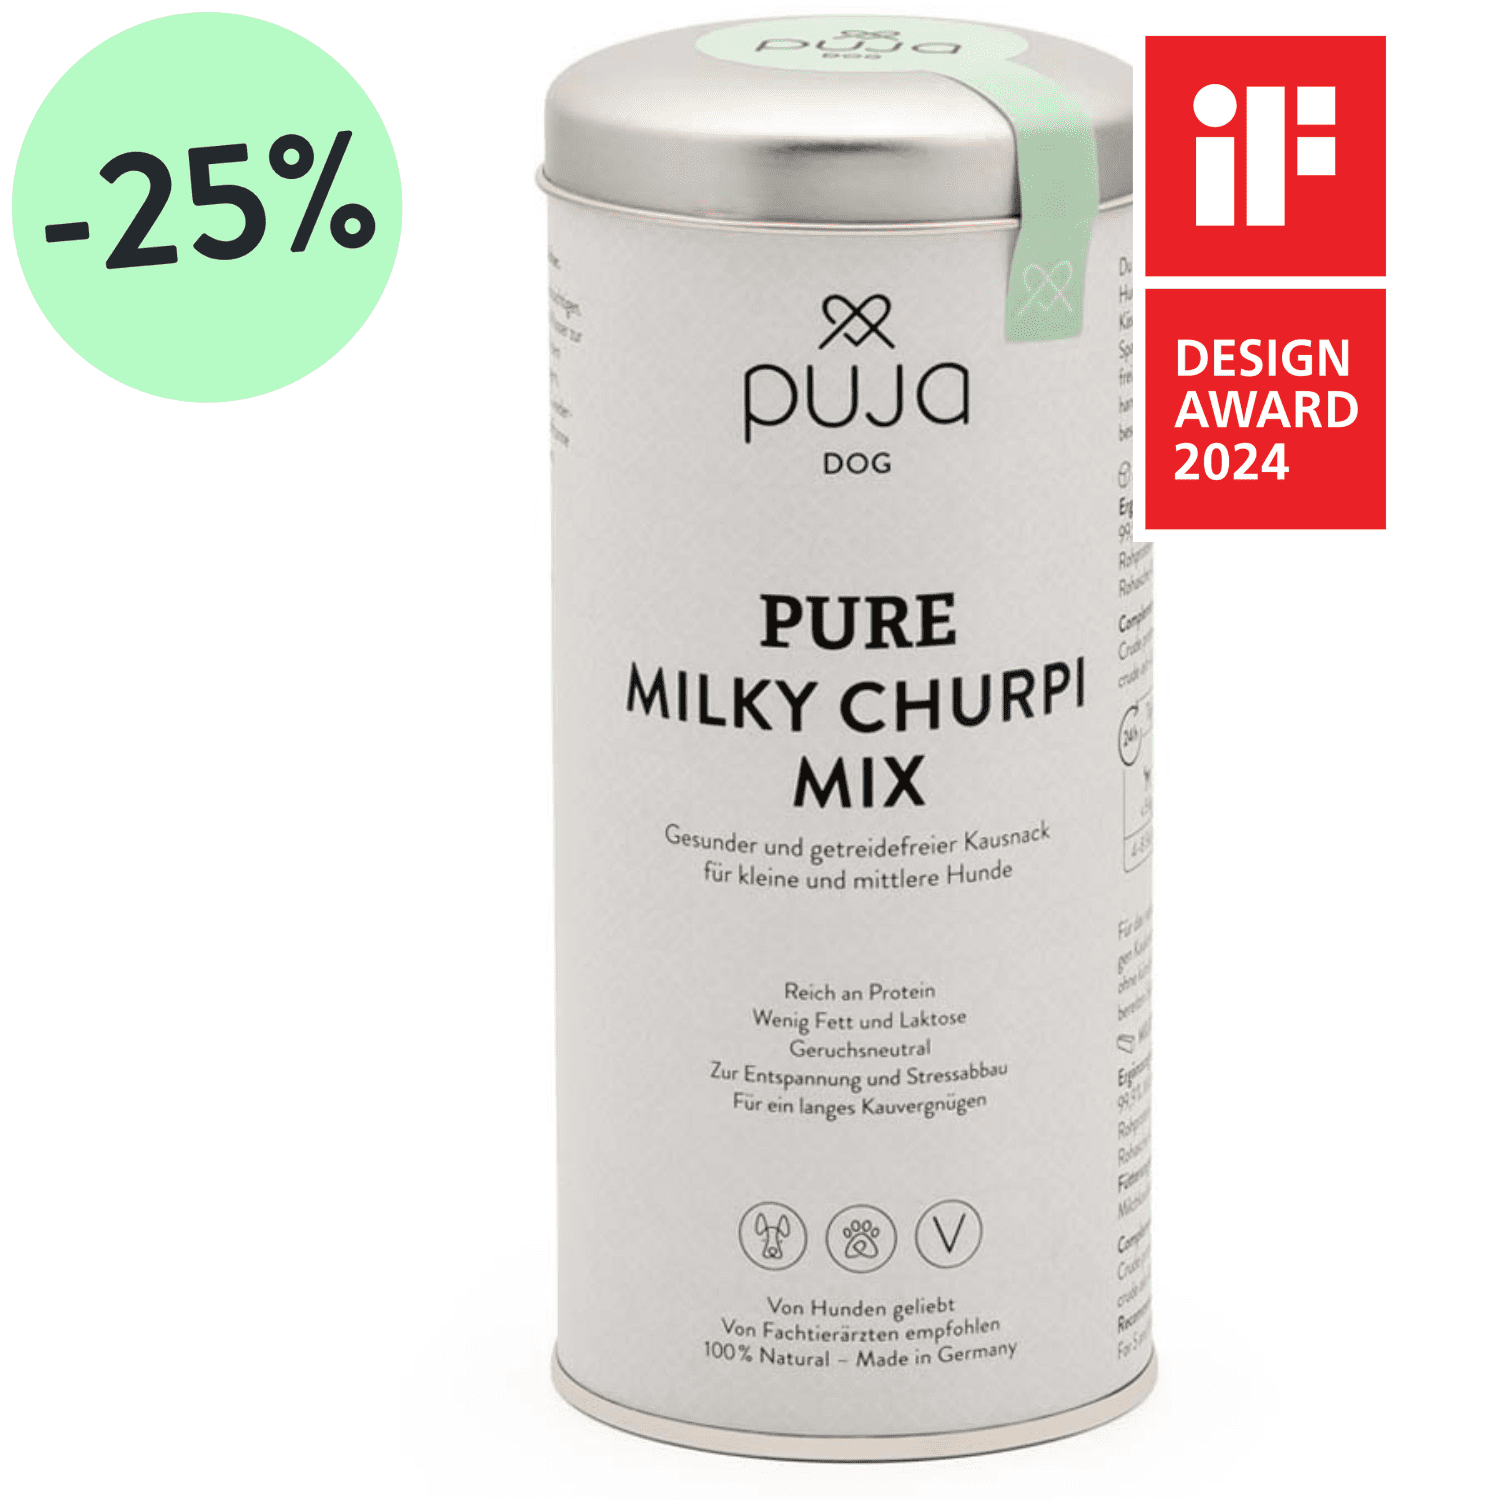 Pure Milky Churpi Mix - Gesunder und getreidefreier Kausnack für kleine und mittlere Hunde 165g